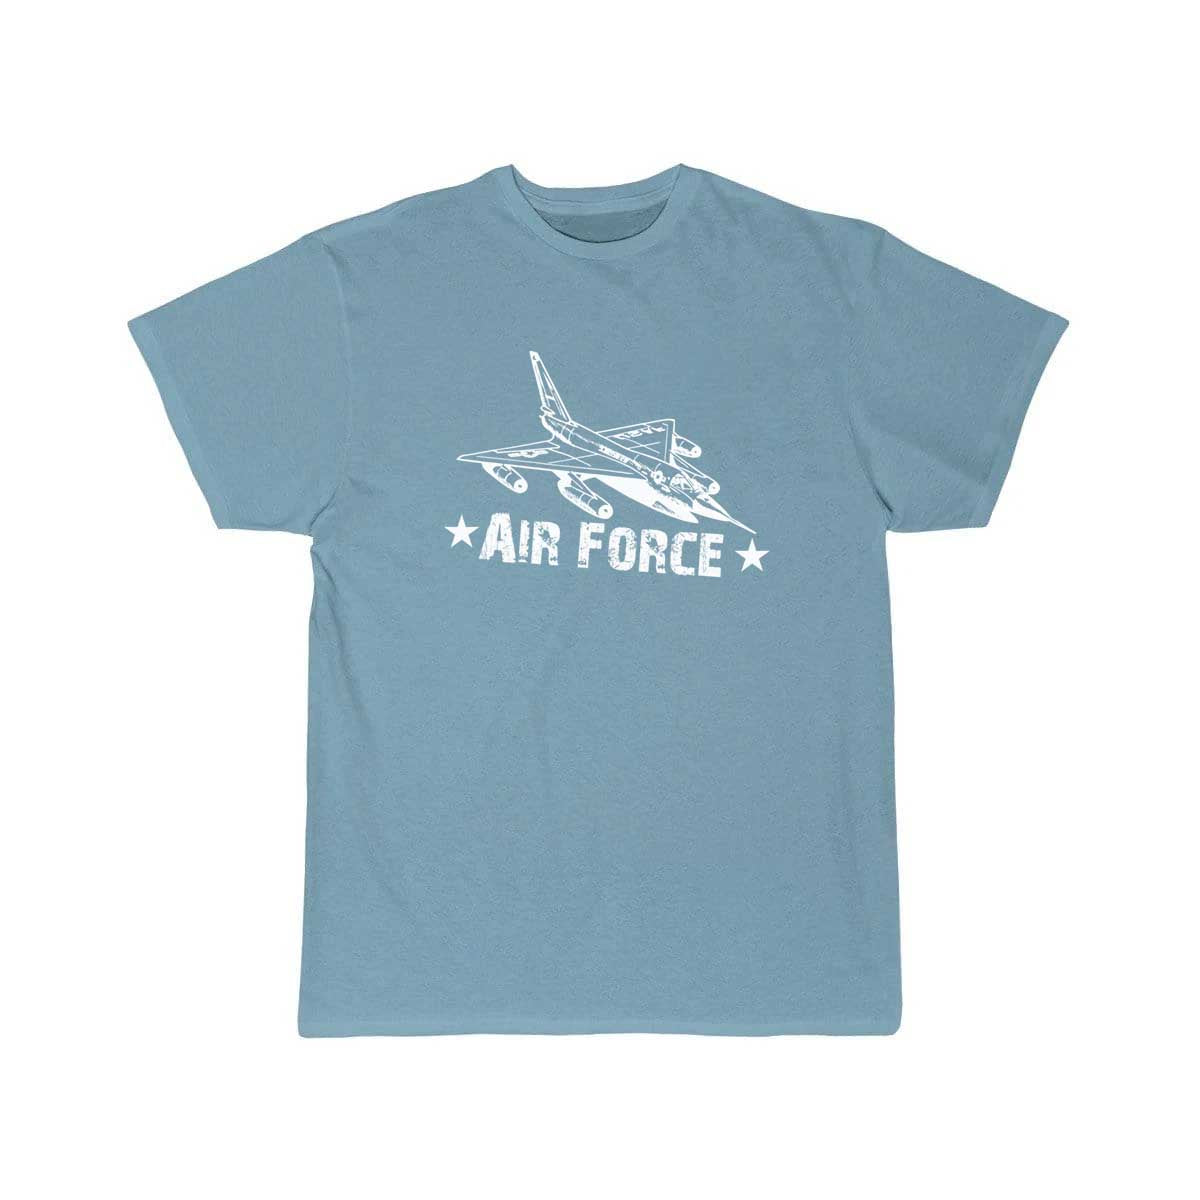 Air force fighter jet t shirt design Military T Shirt THE AV8R